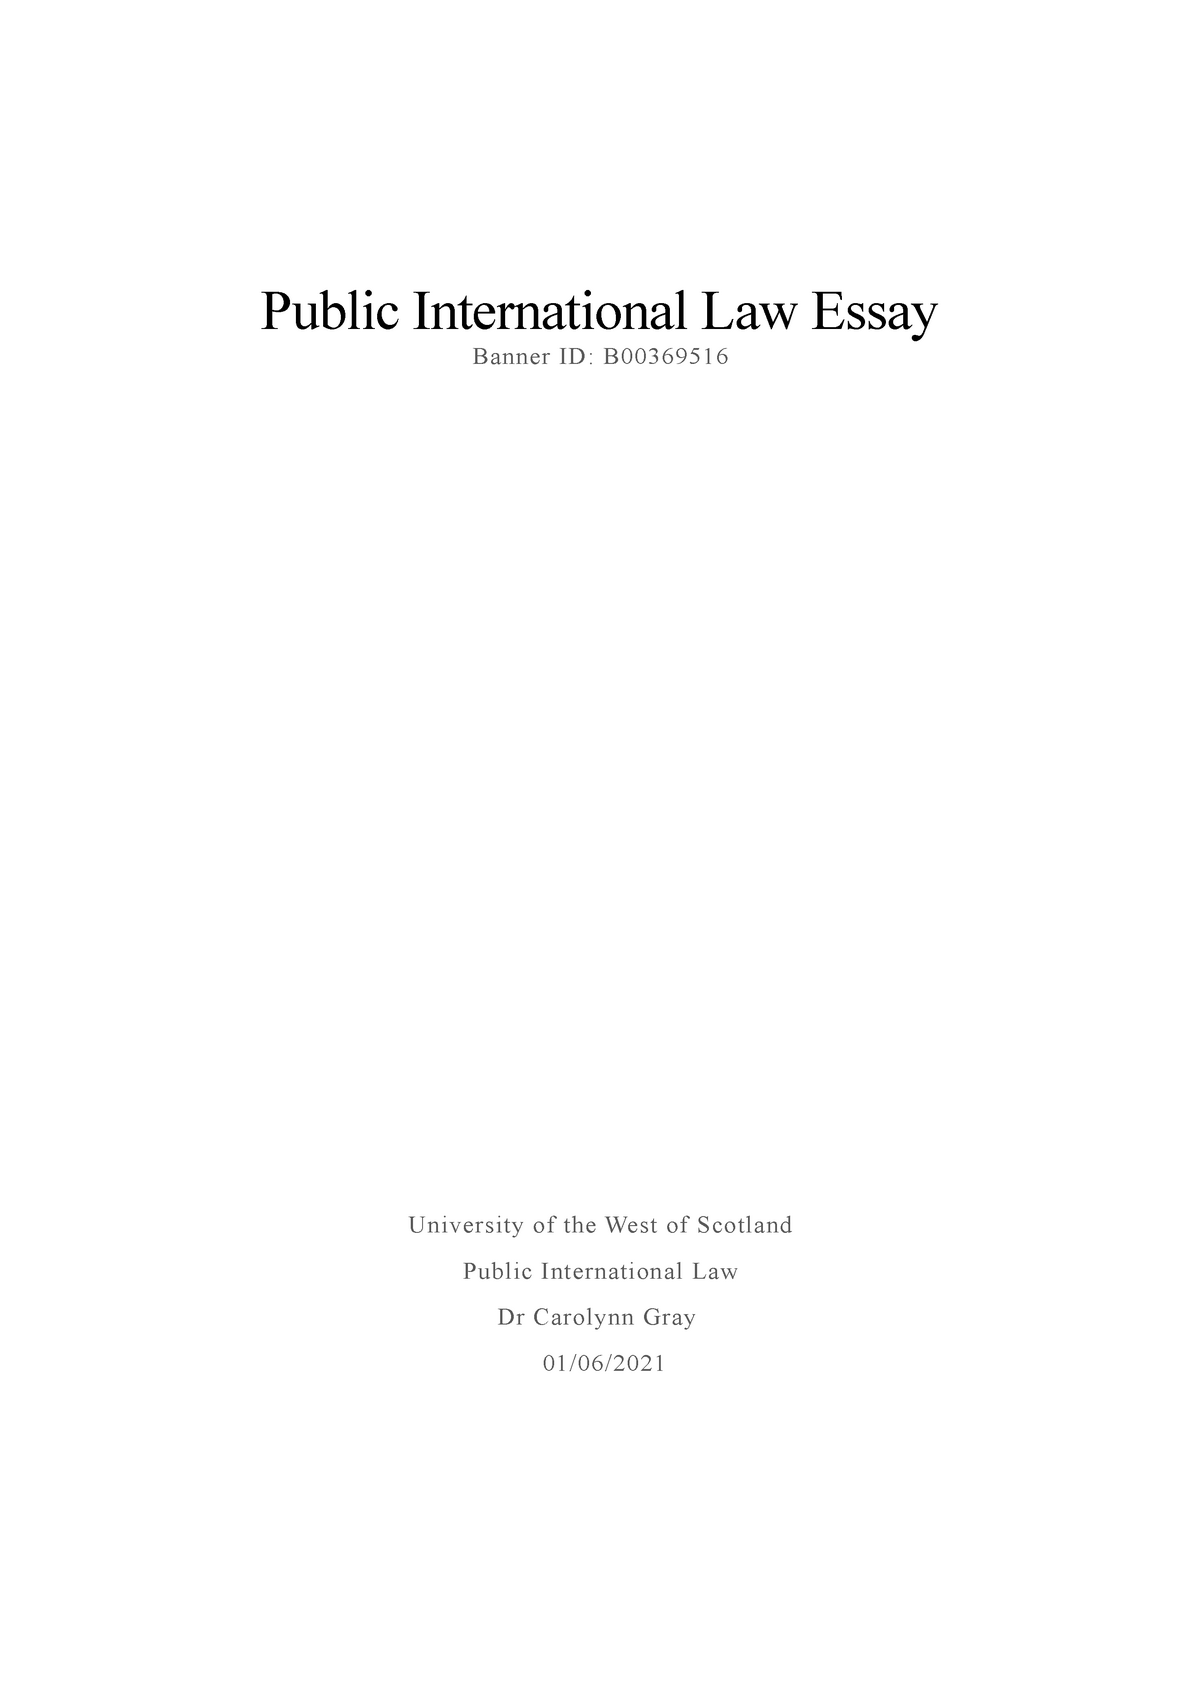 public international law essay